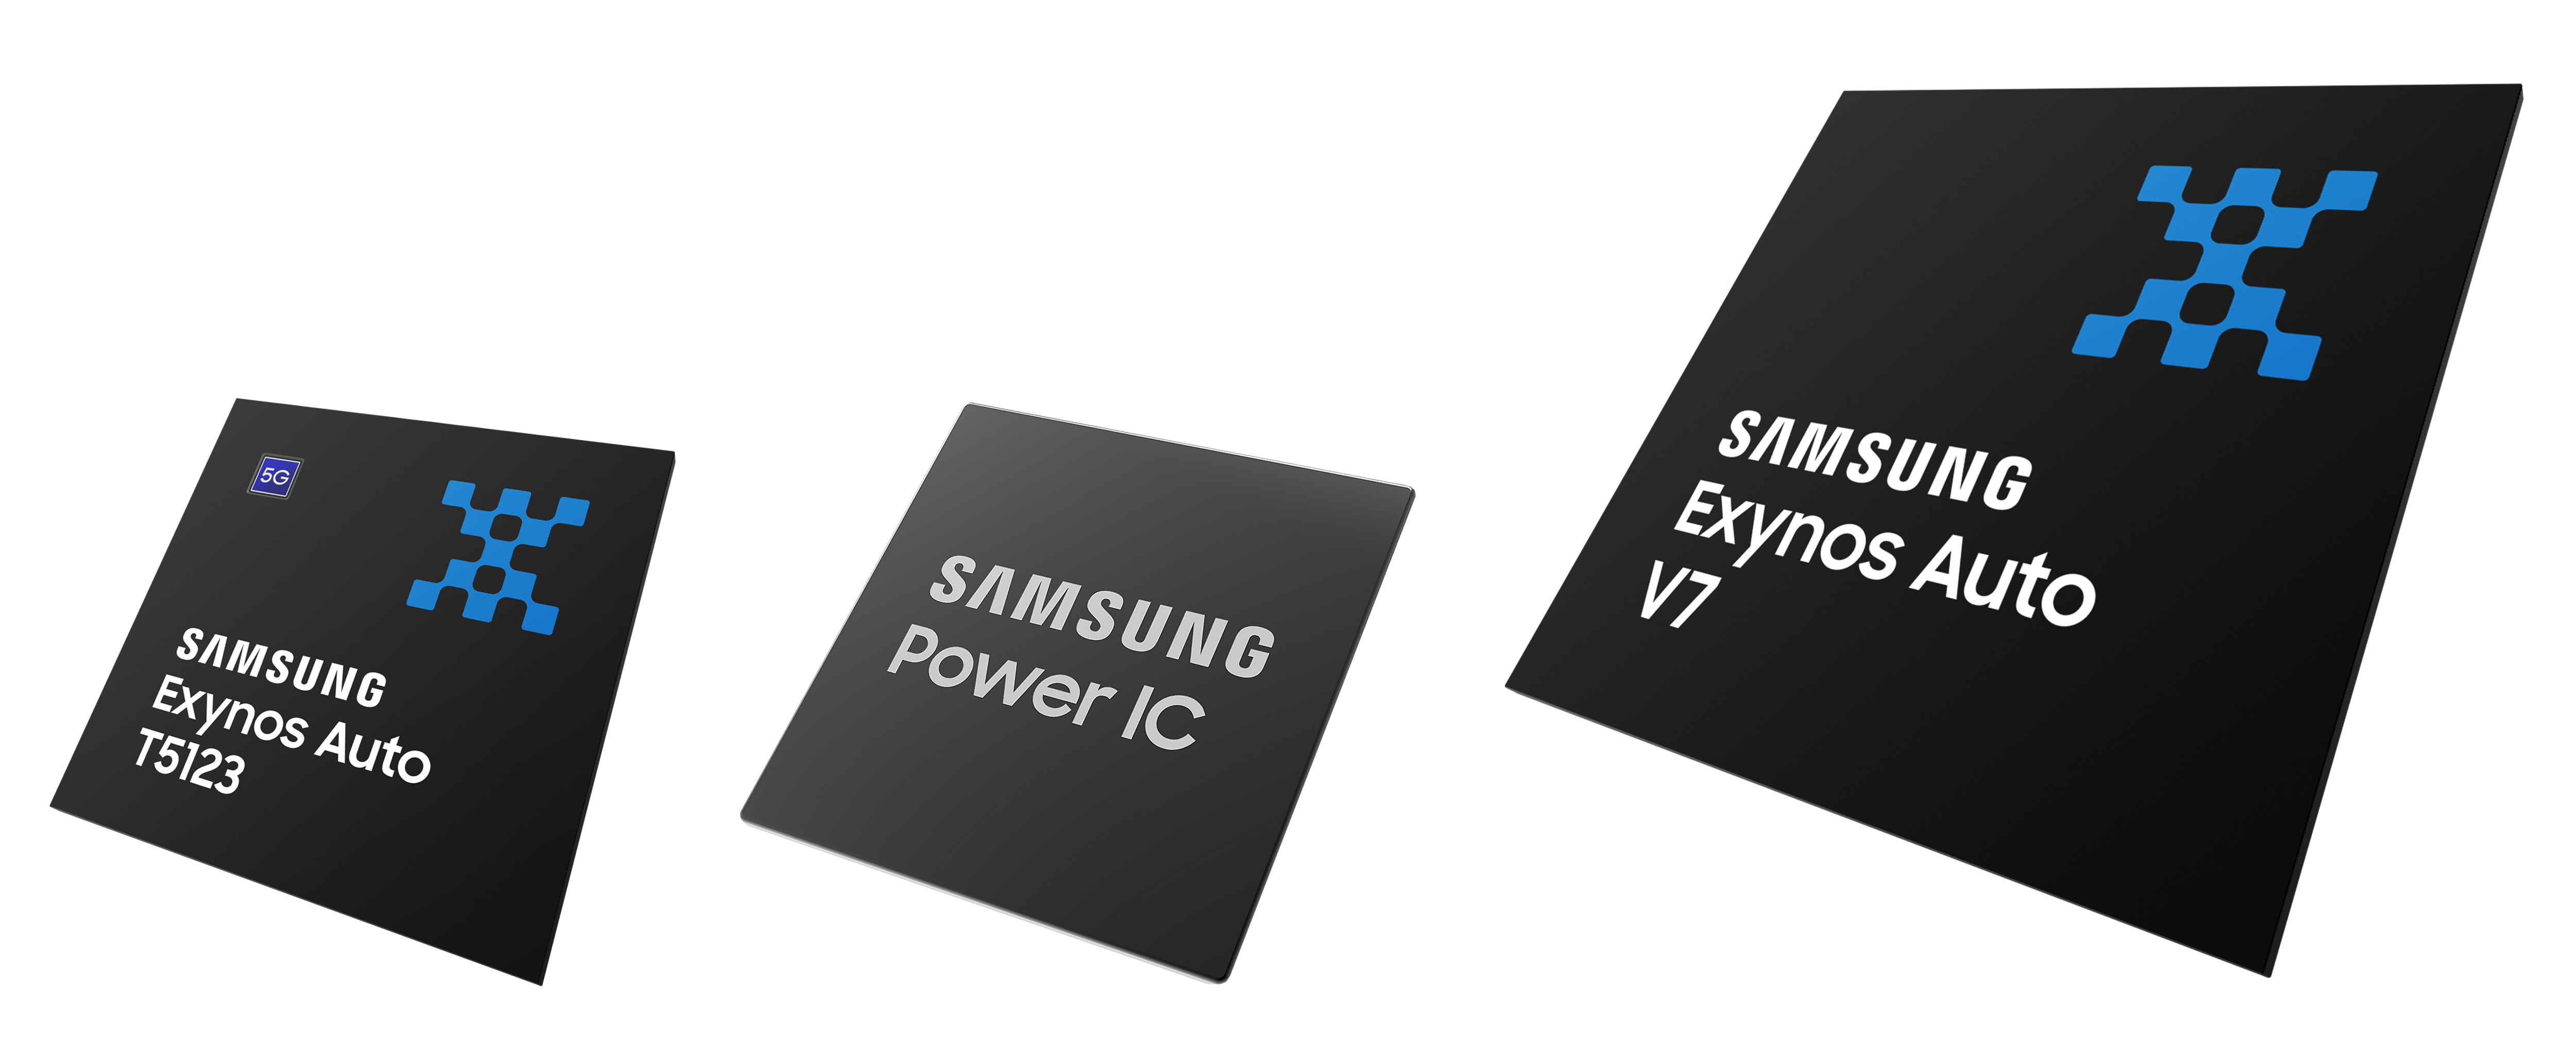 Samsung prezentuje trzy nowe rozwiązania Logic do pojazdów nowej generacji